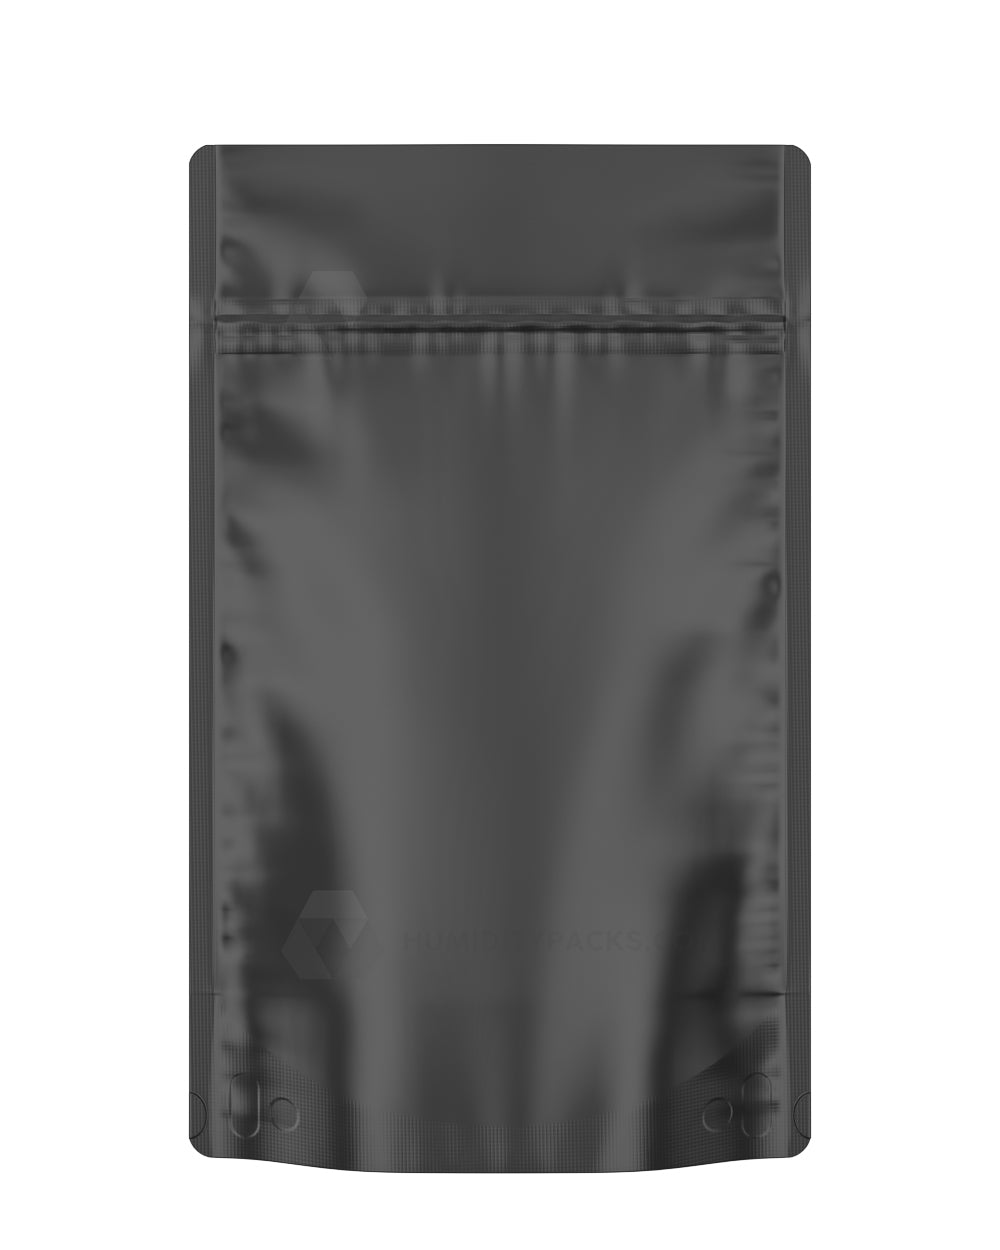 28g Tamper Evident Matte Black Wholesale Mylar Bags